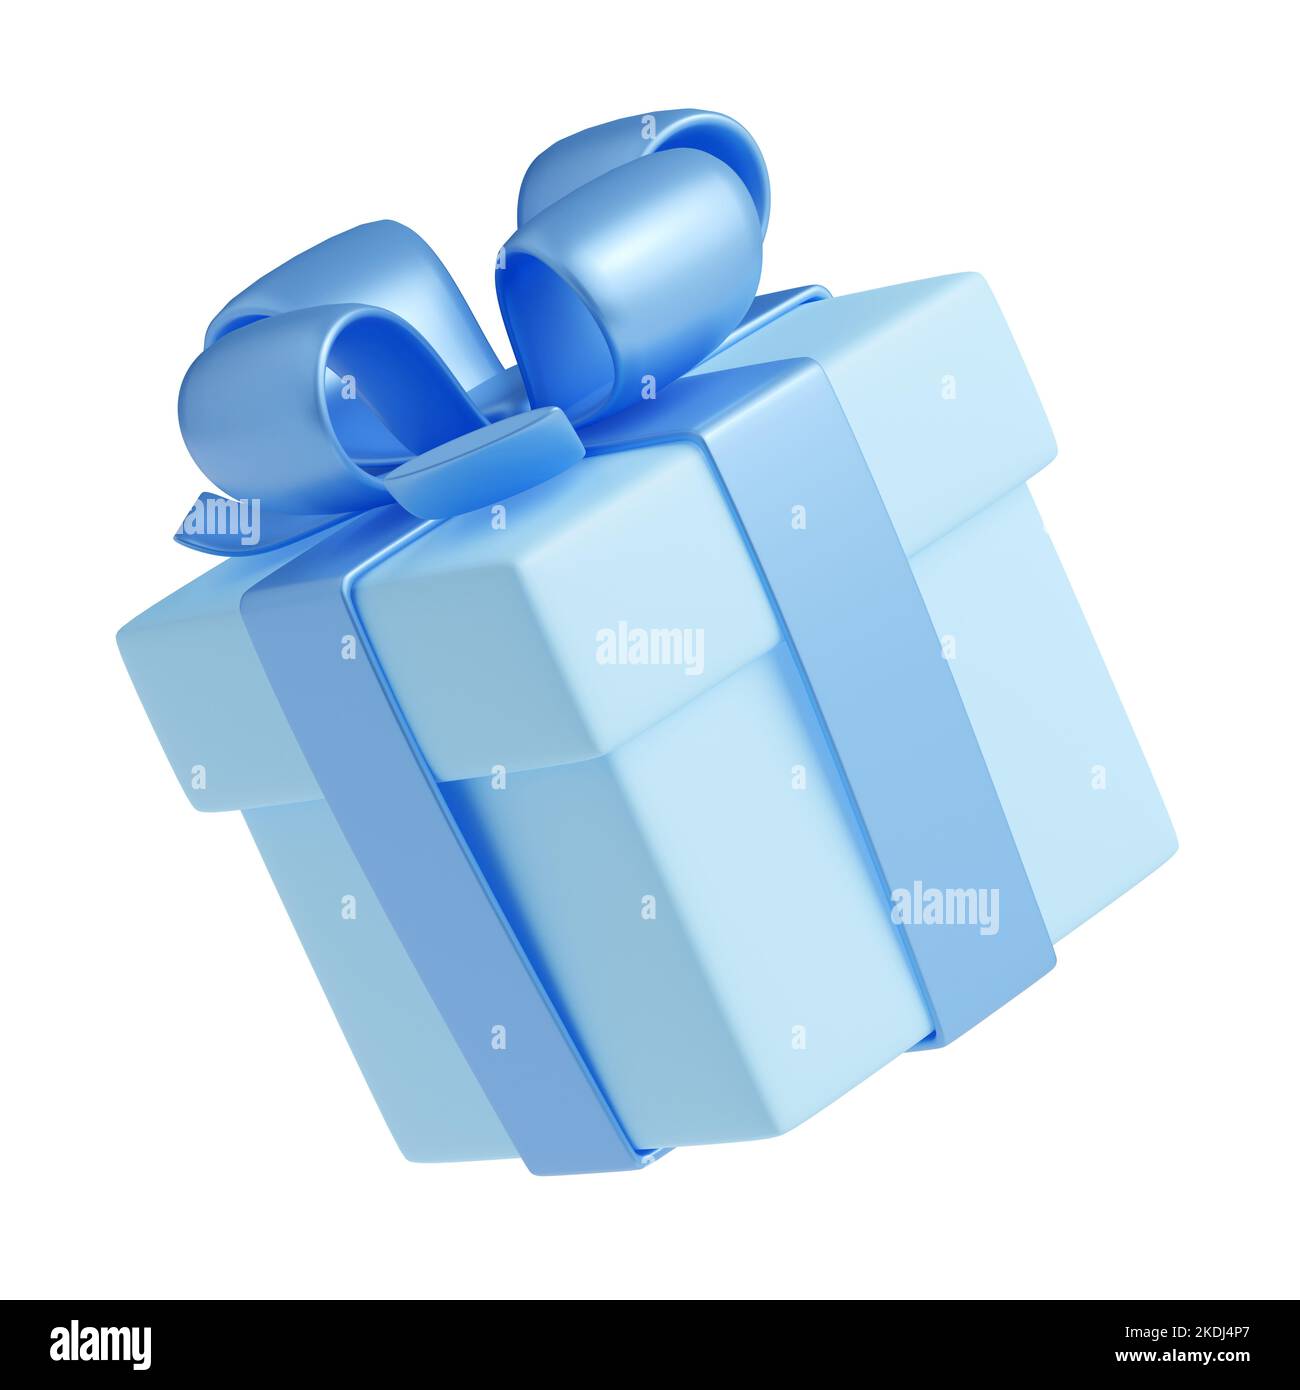 Caja para regalo plana blanca (Unidad) - Tienda Multyprint